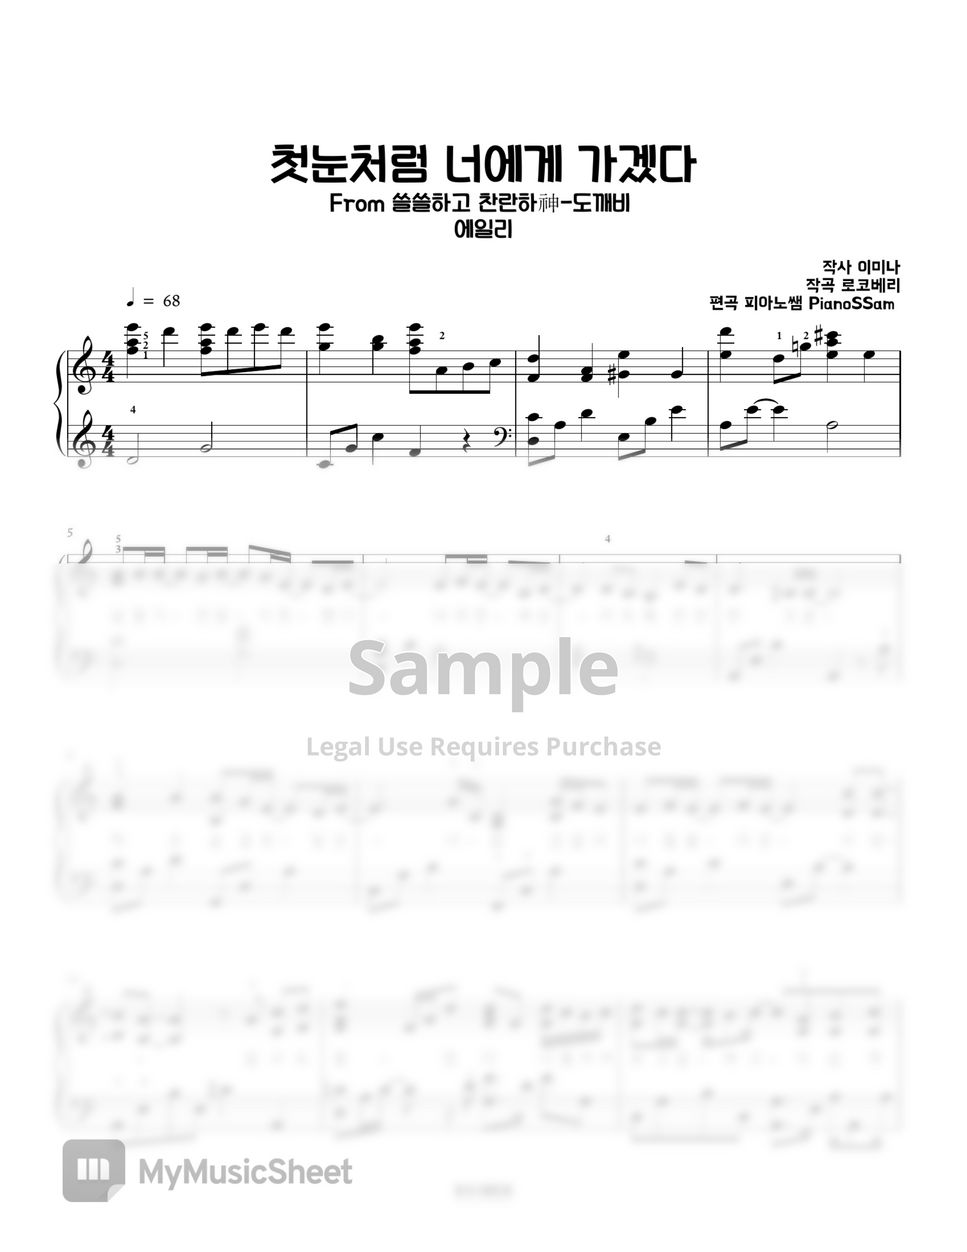 에일리(Ailee) - I'll go to you like the first snow (쓸쓸하고 찬란하神-도깨비) | Piano Arrangement in C major (OST) by PianoSSam